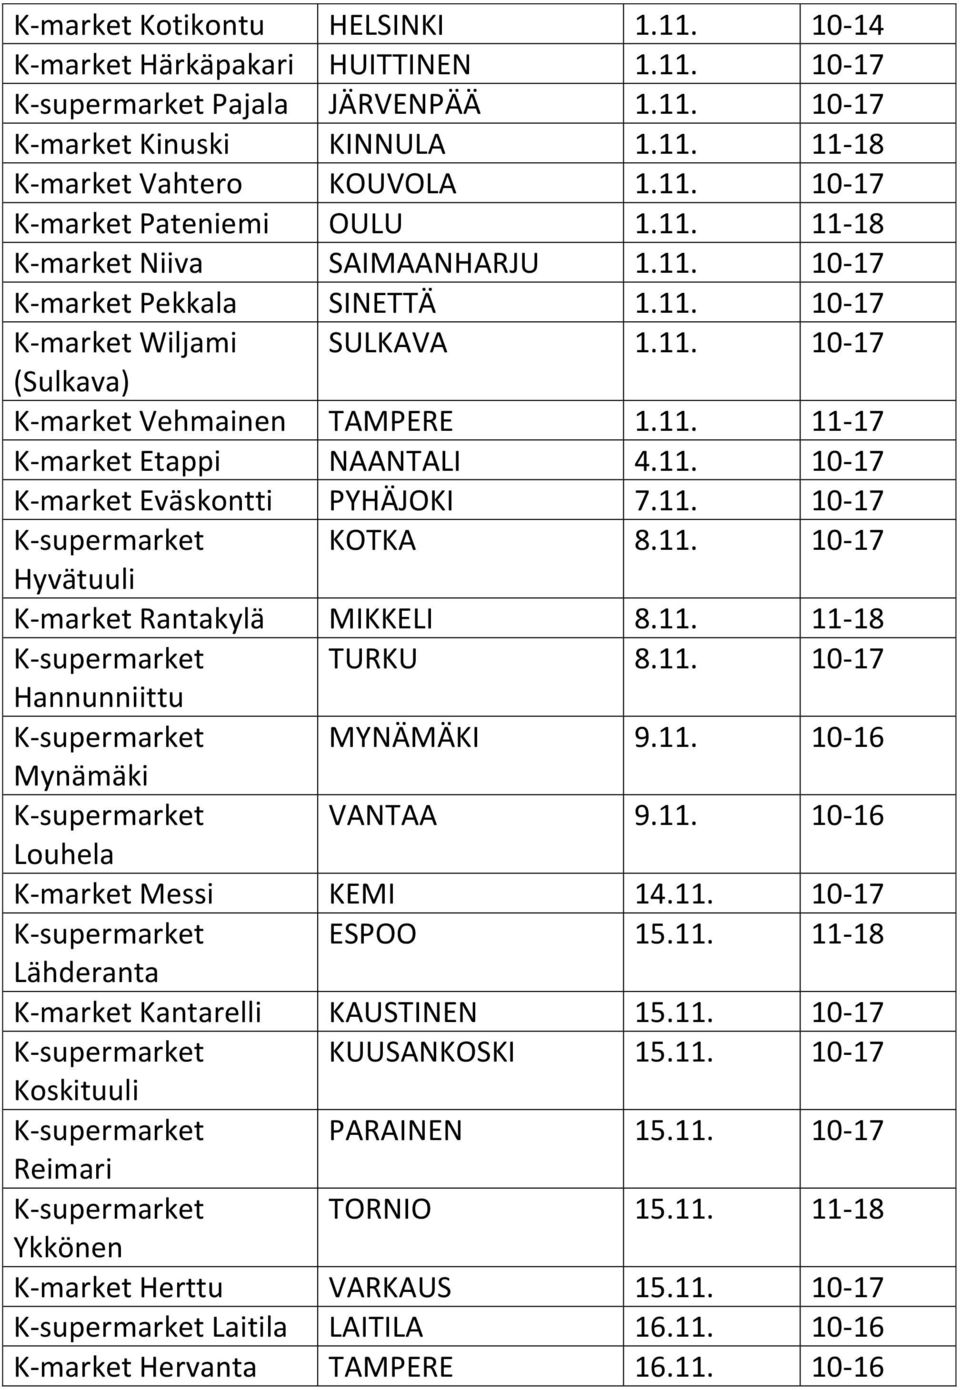 11. 10-17 K-market Eväskontti PYHÄJOKI 7.11. 10-17 K-supermarket KOTKA 8.11. 10-17 Hyvätuuli K-market Rantakylä MIKKELI 8.11. 11-18 K-supermarket TURKU 8.11. 10-17 Hannunniittu K-supermarket MYNÄMÄKI 9.